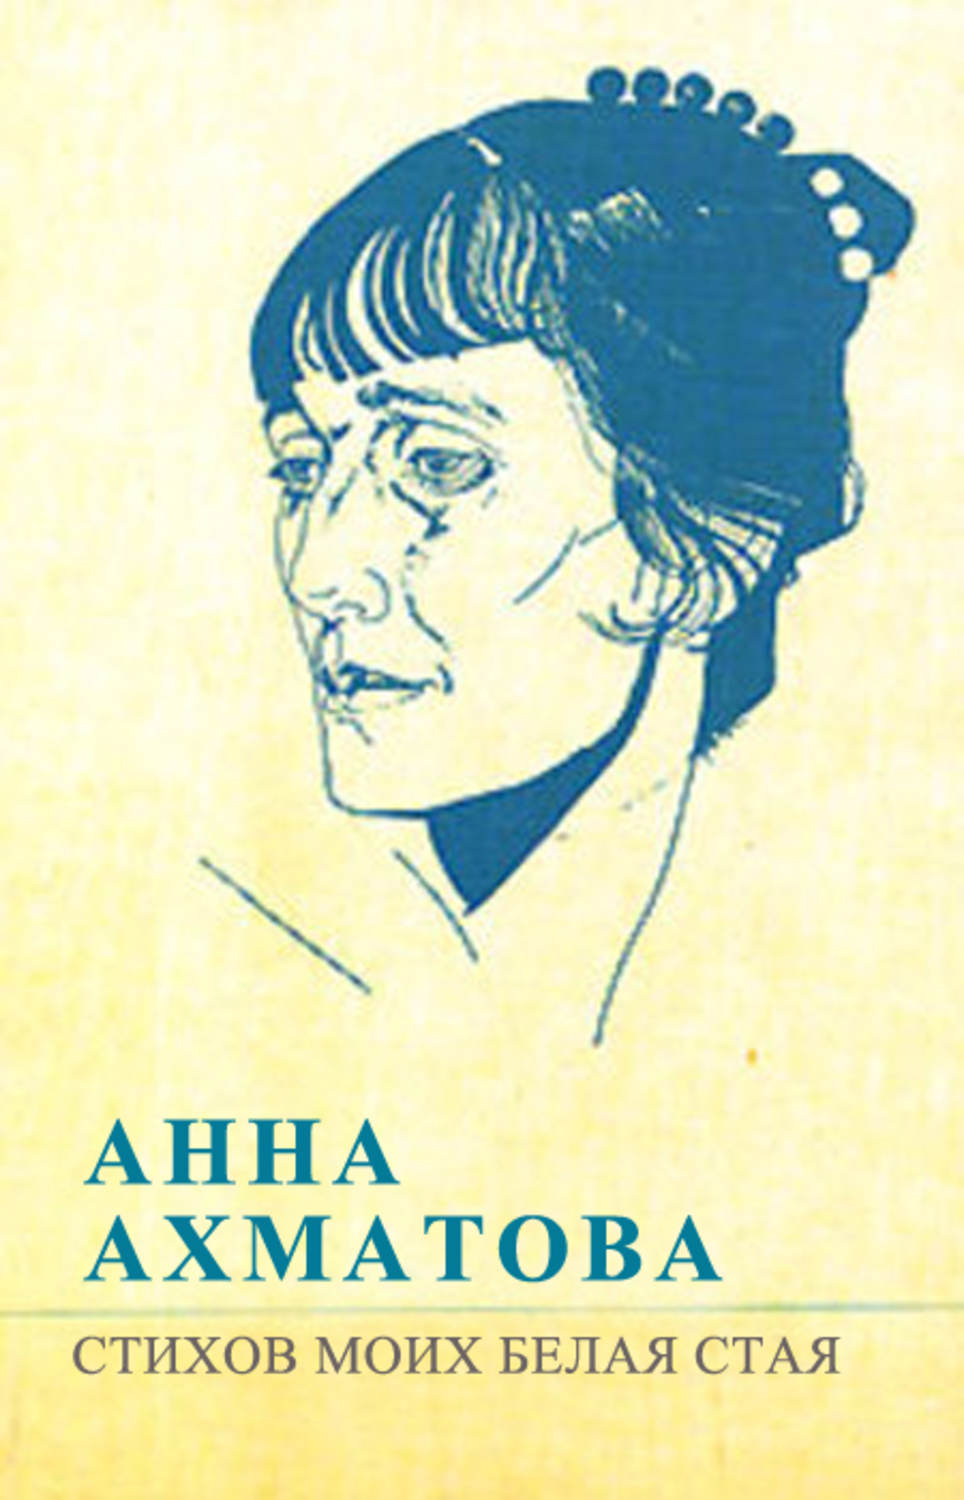 Белая стая Ахматова 1917